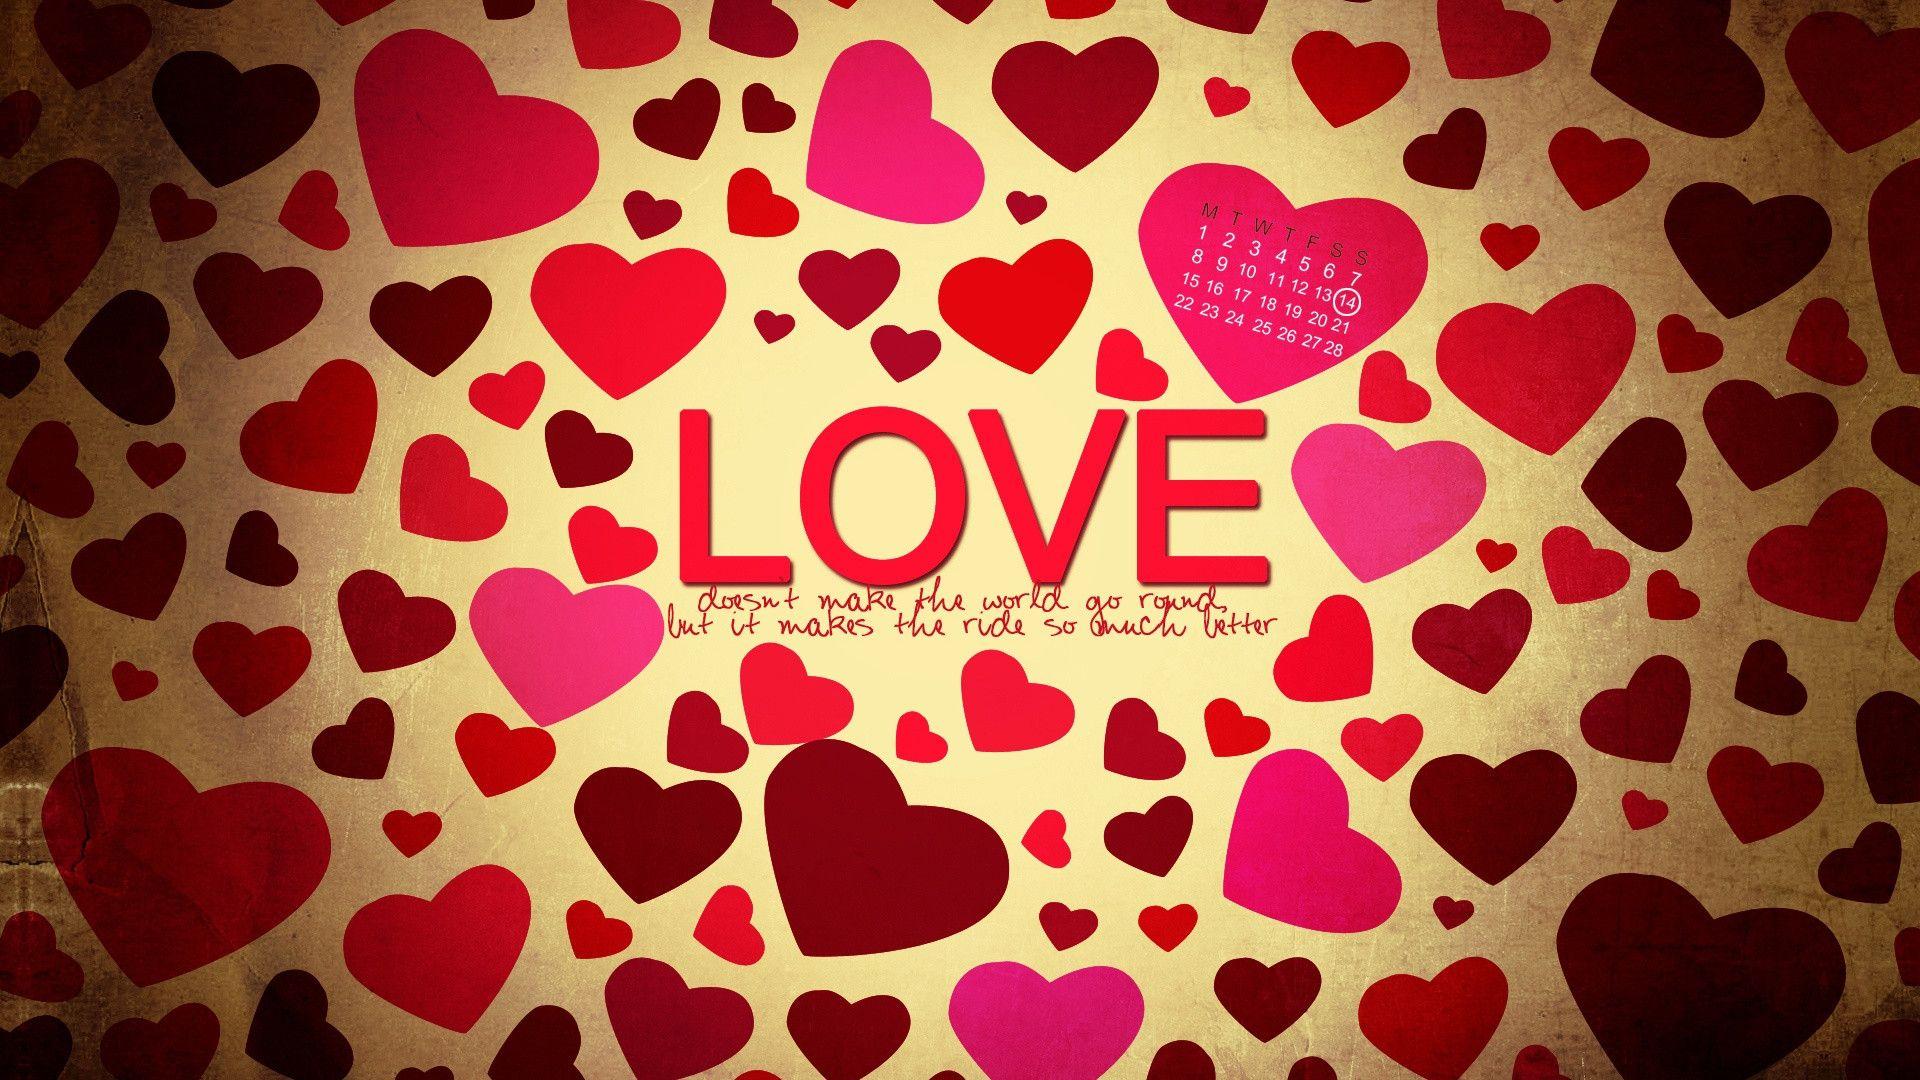 Heart In Love Wallpaper HD. Wallpaper, Background, Image, Art